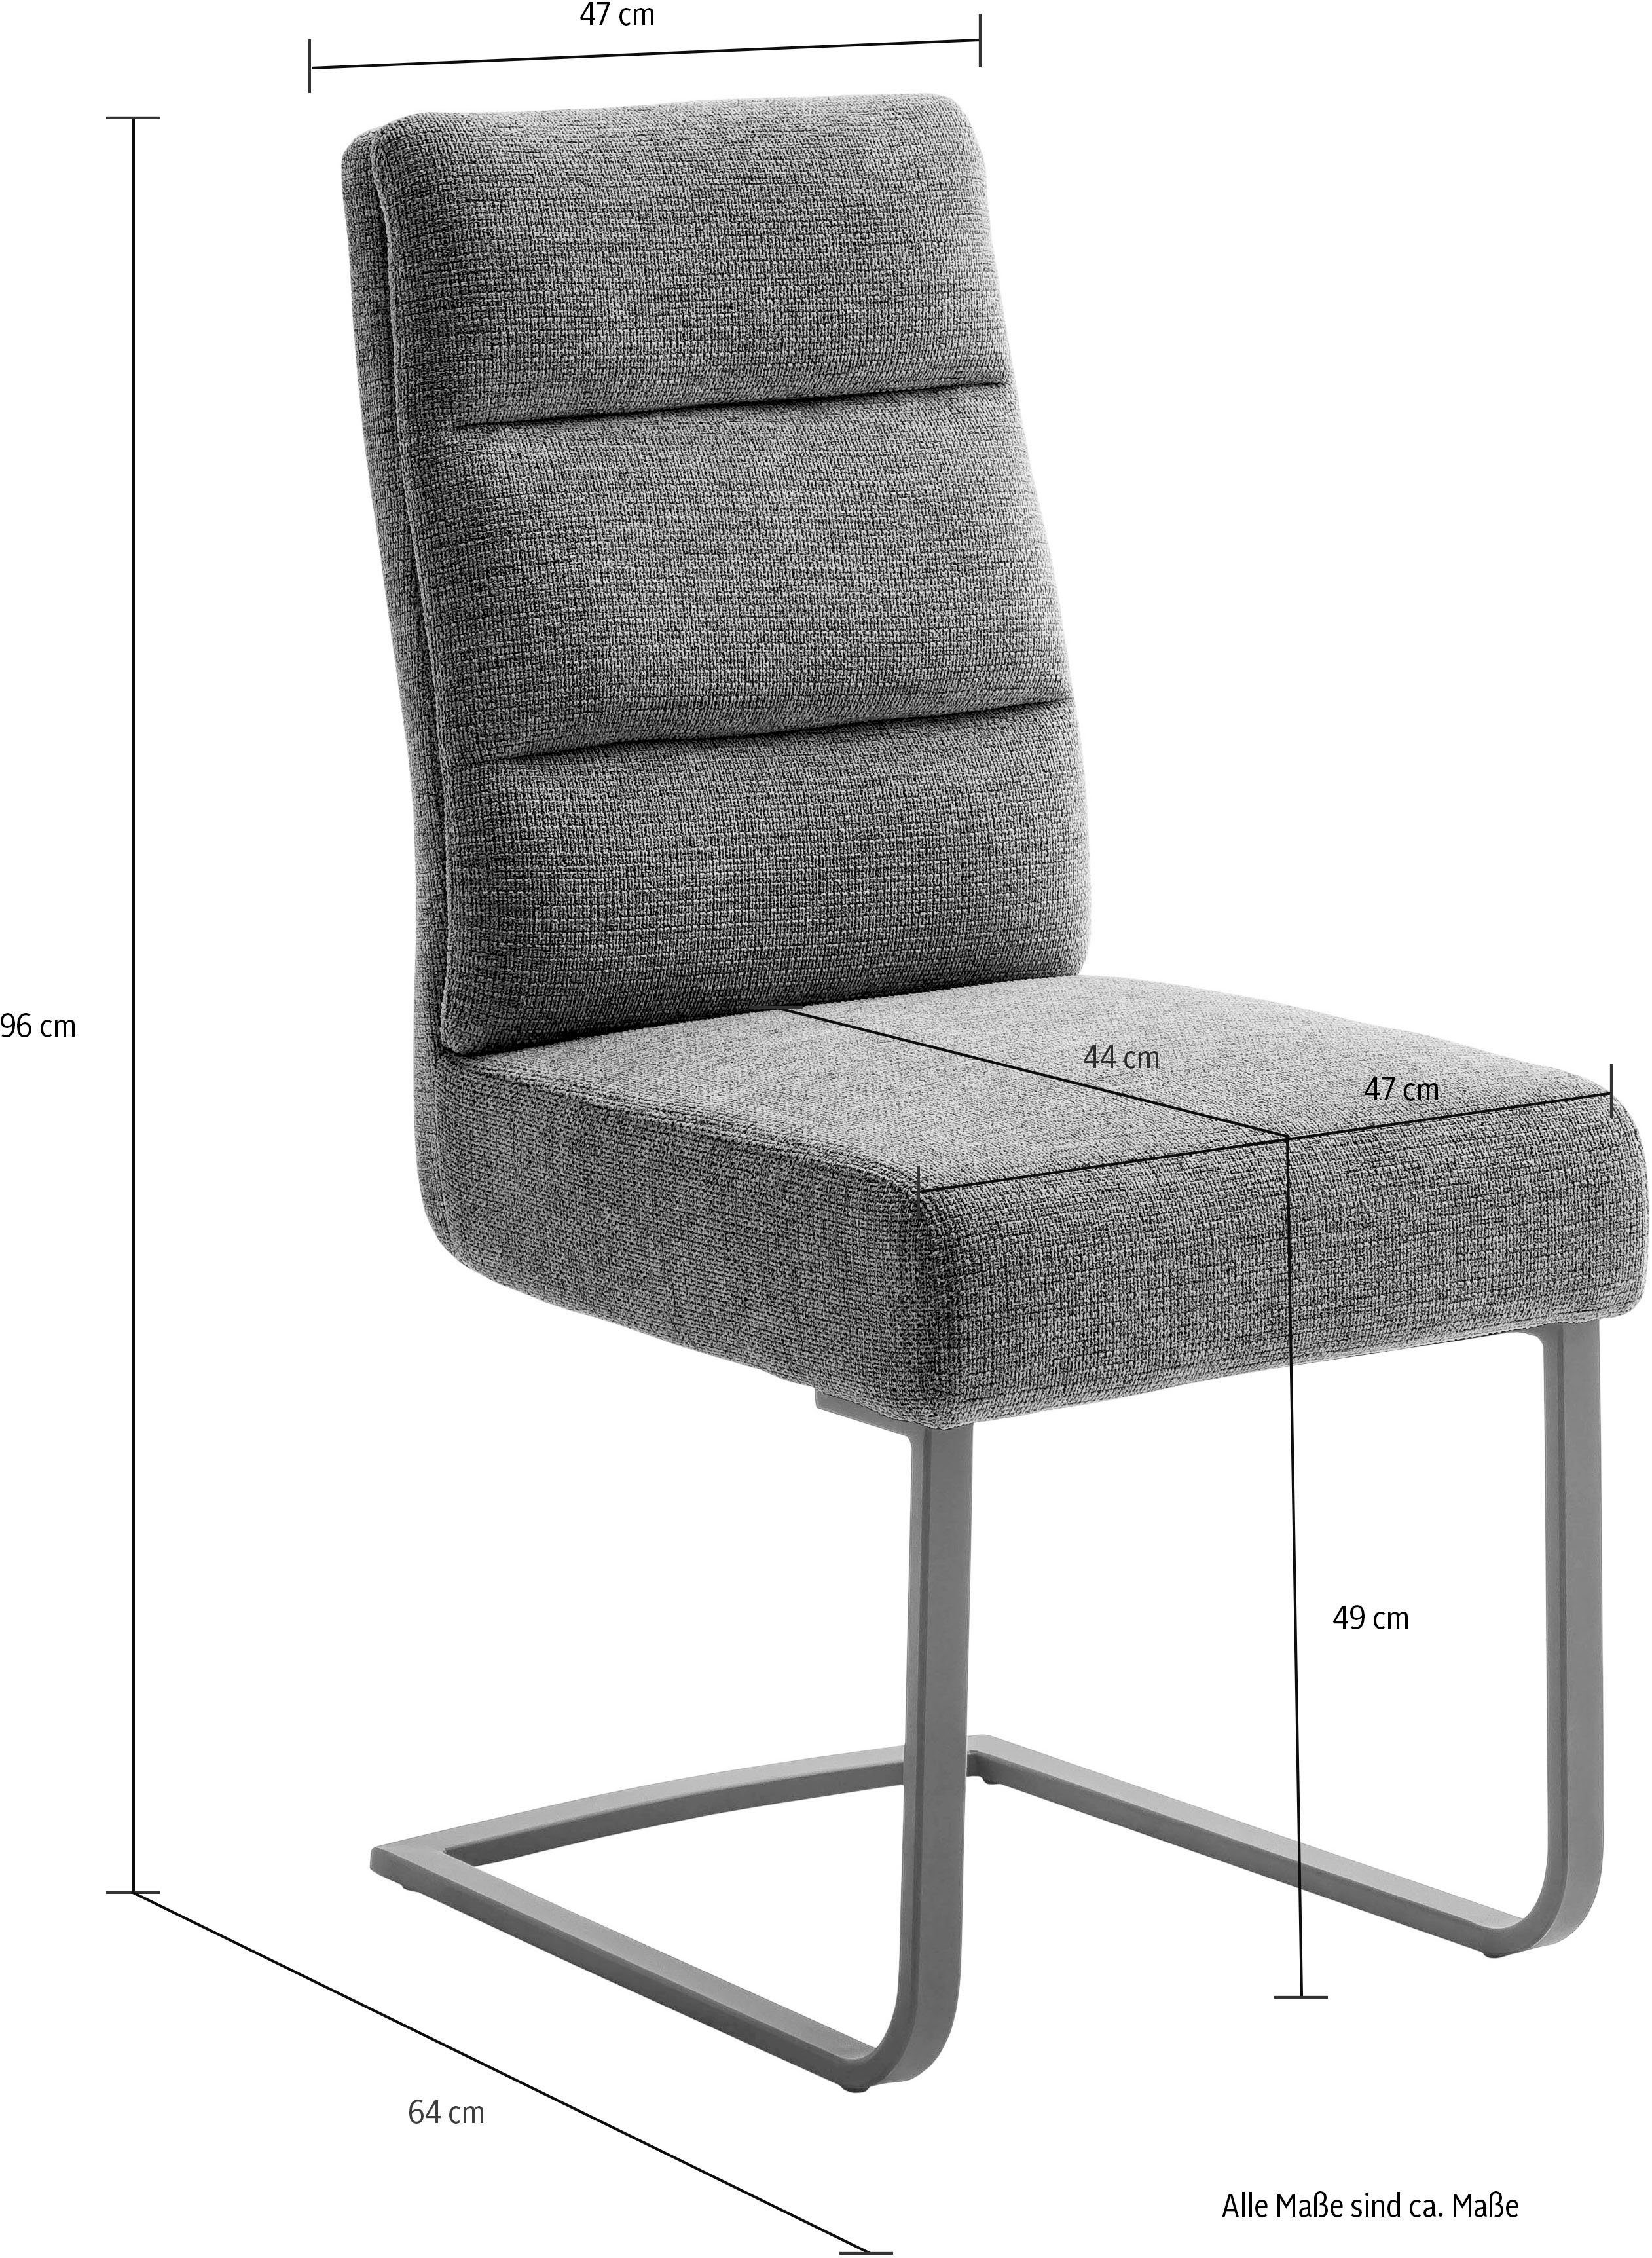 MCA furniture olive | LIMASSOL Esszimmerstuhl olive